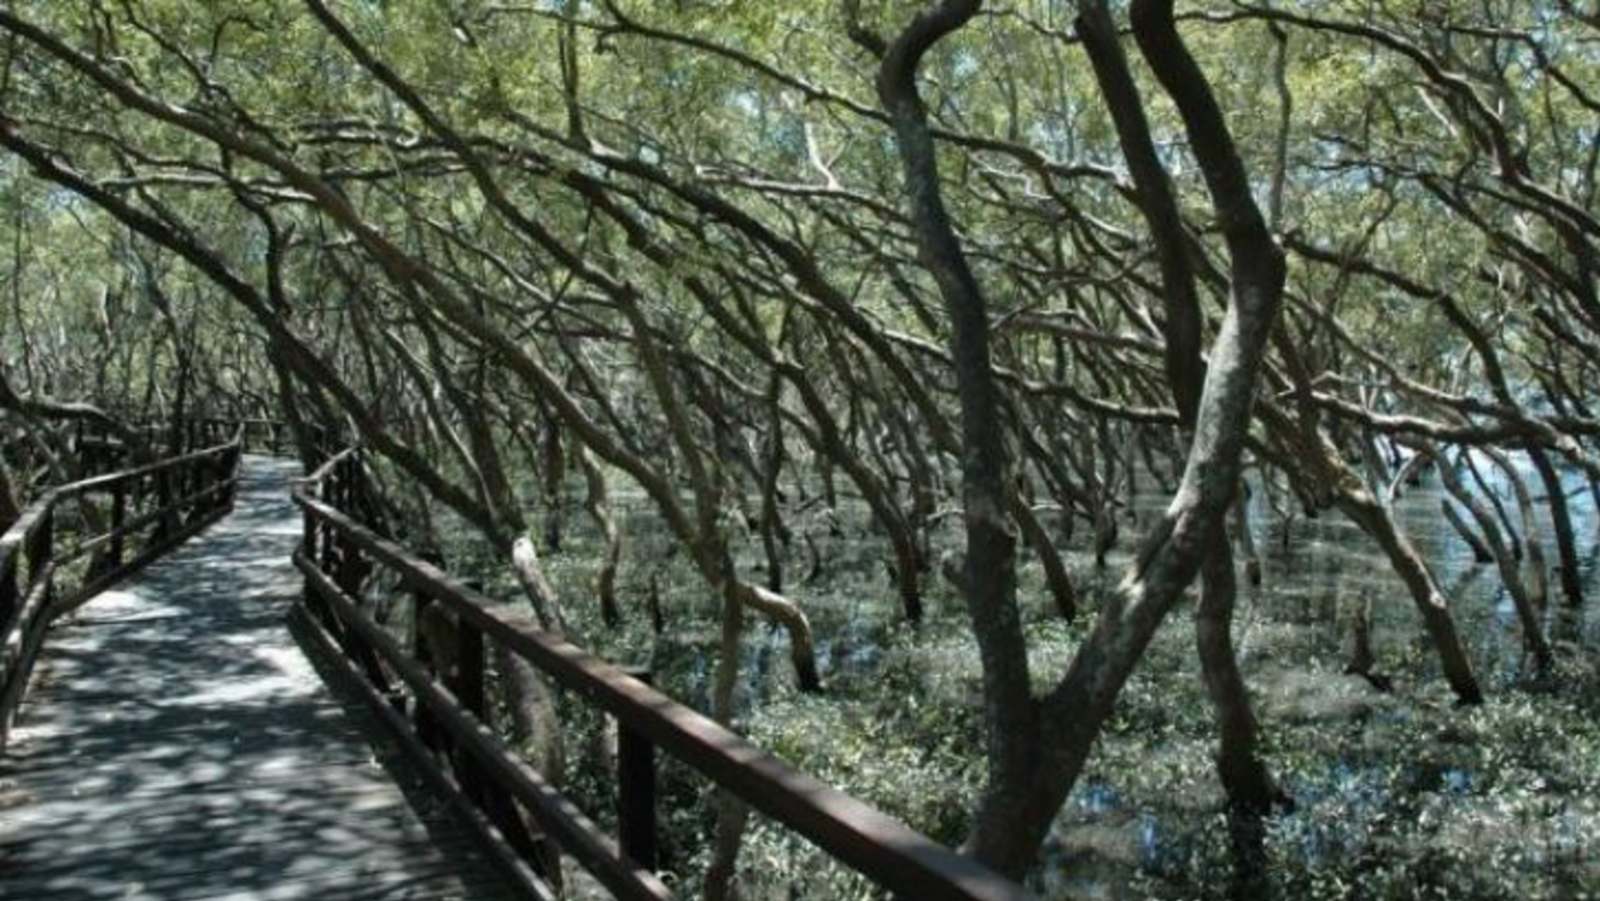 Australian Mangroves